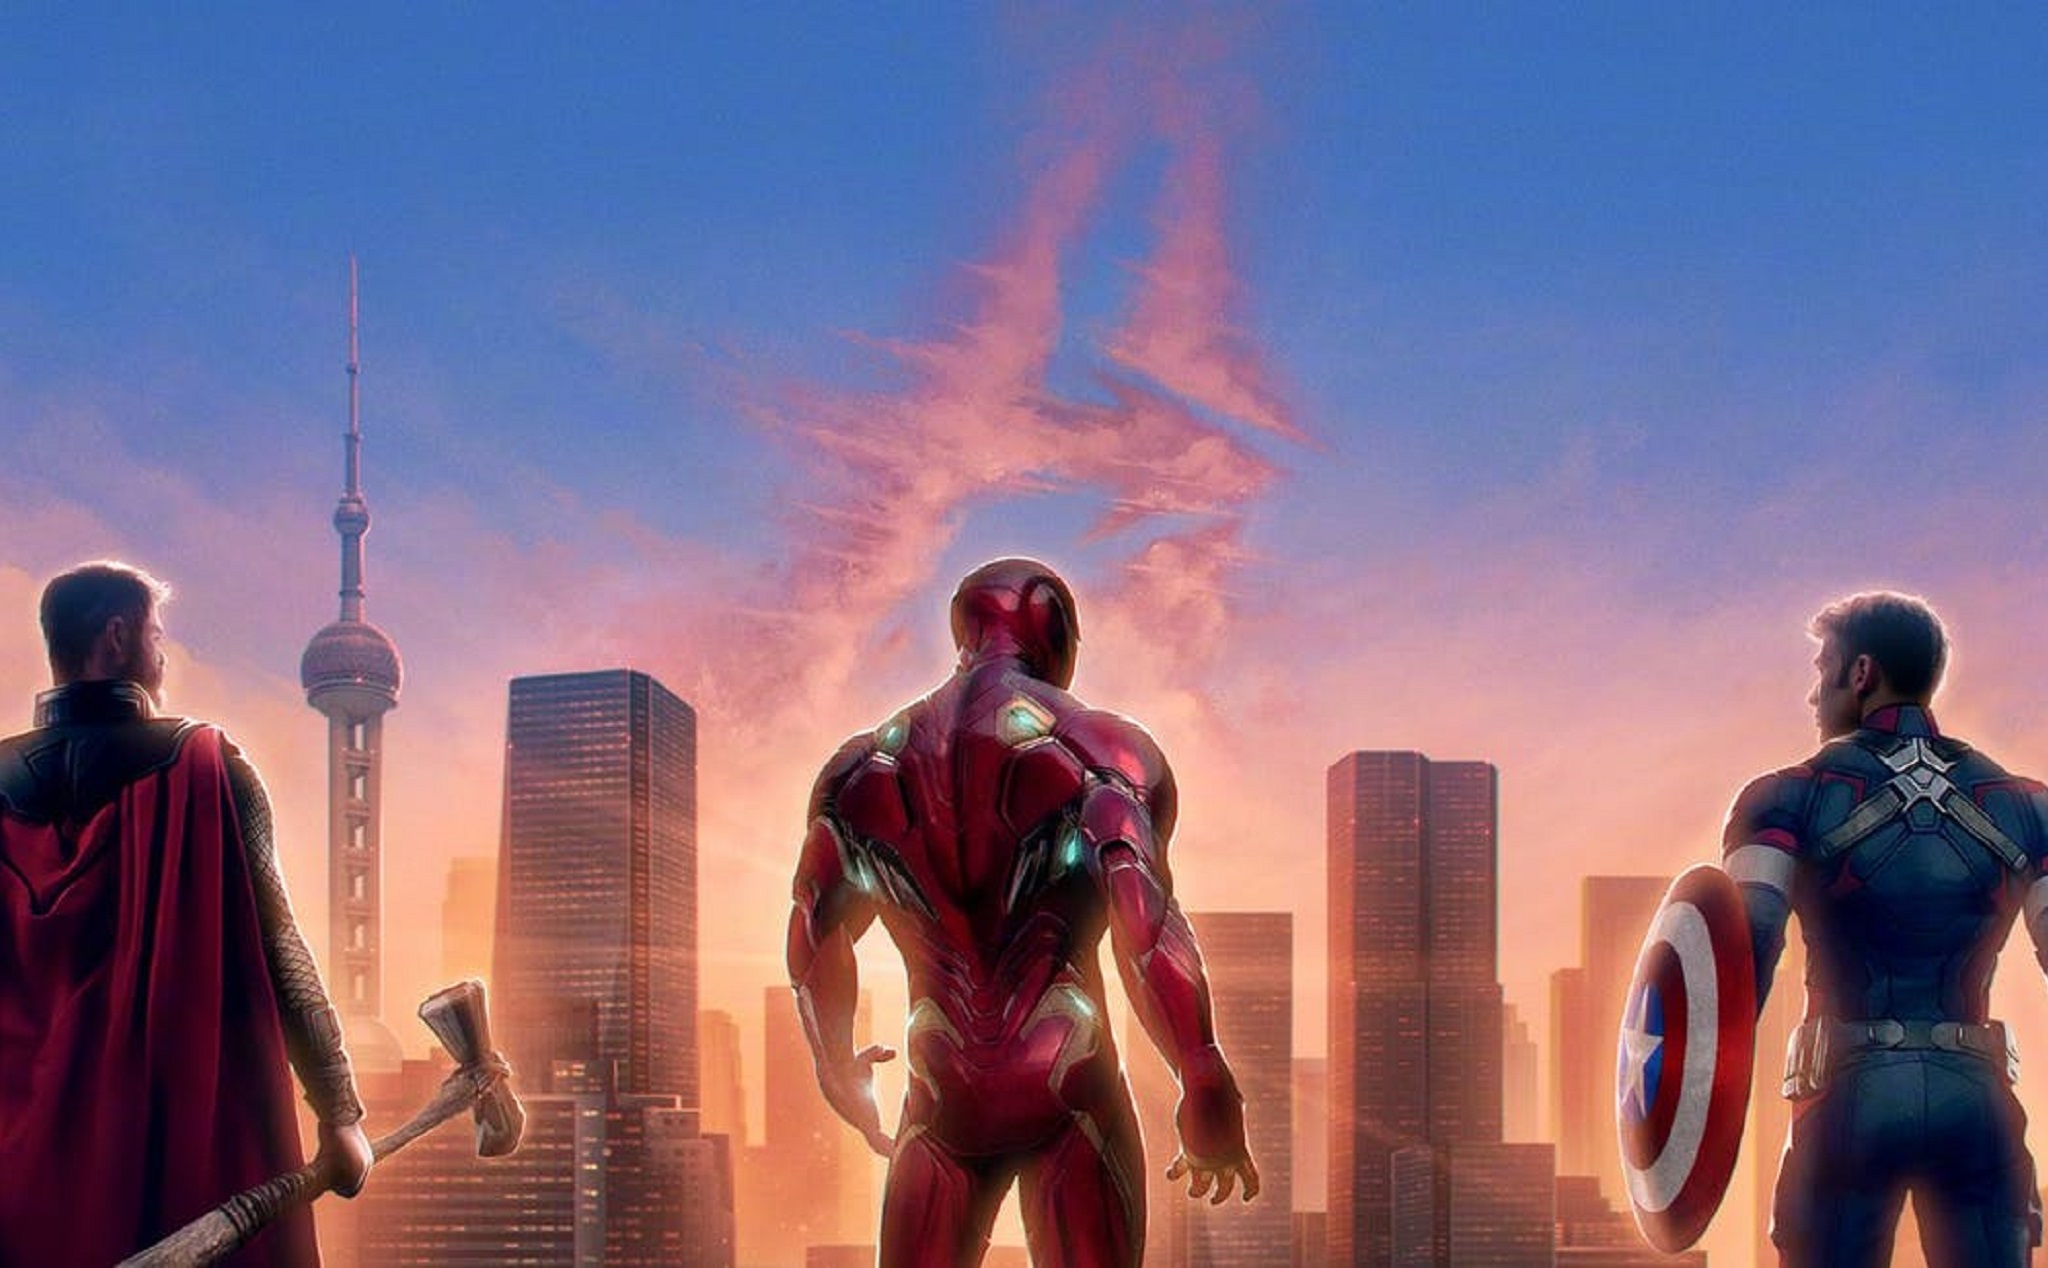 Phim Avengers: Endgame sẽ được chiếu ở VN đủ thời lượng 3 tiếng lẻ 1 phút